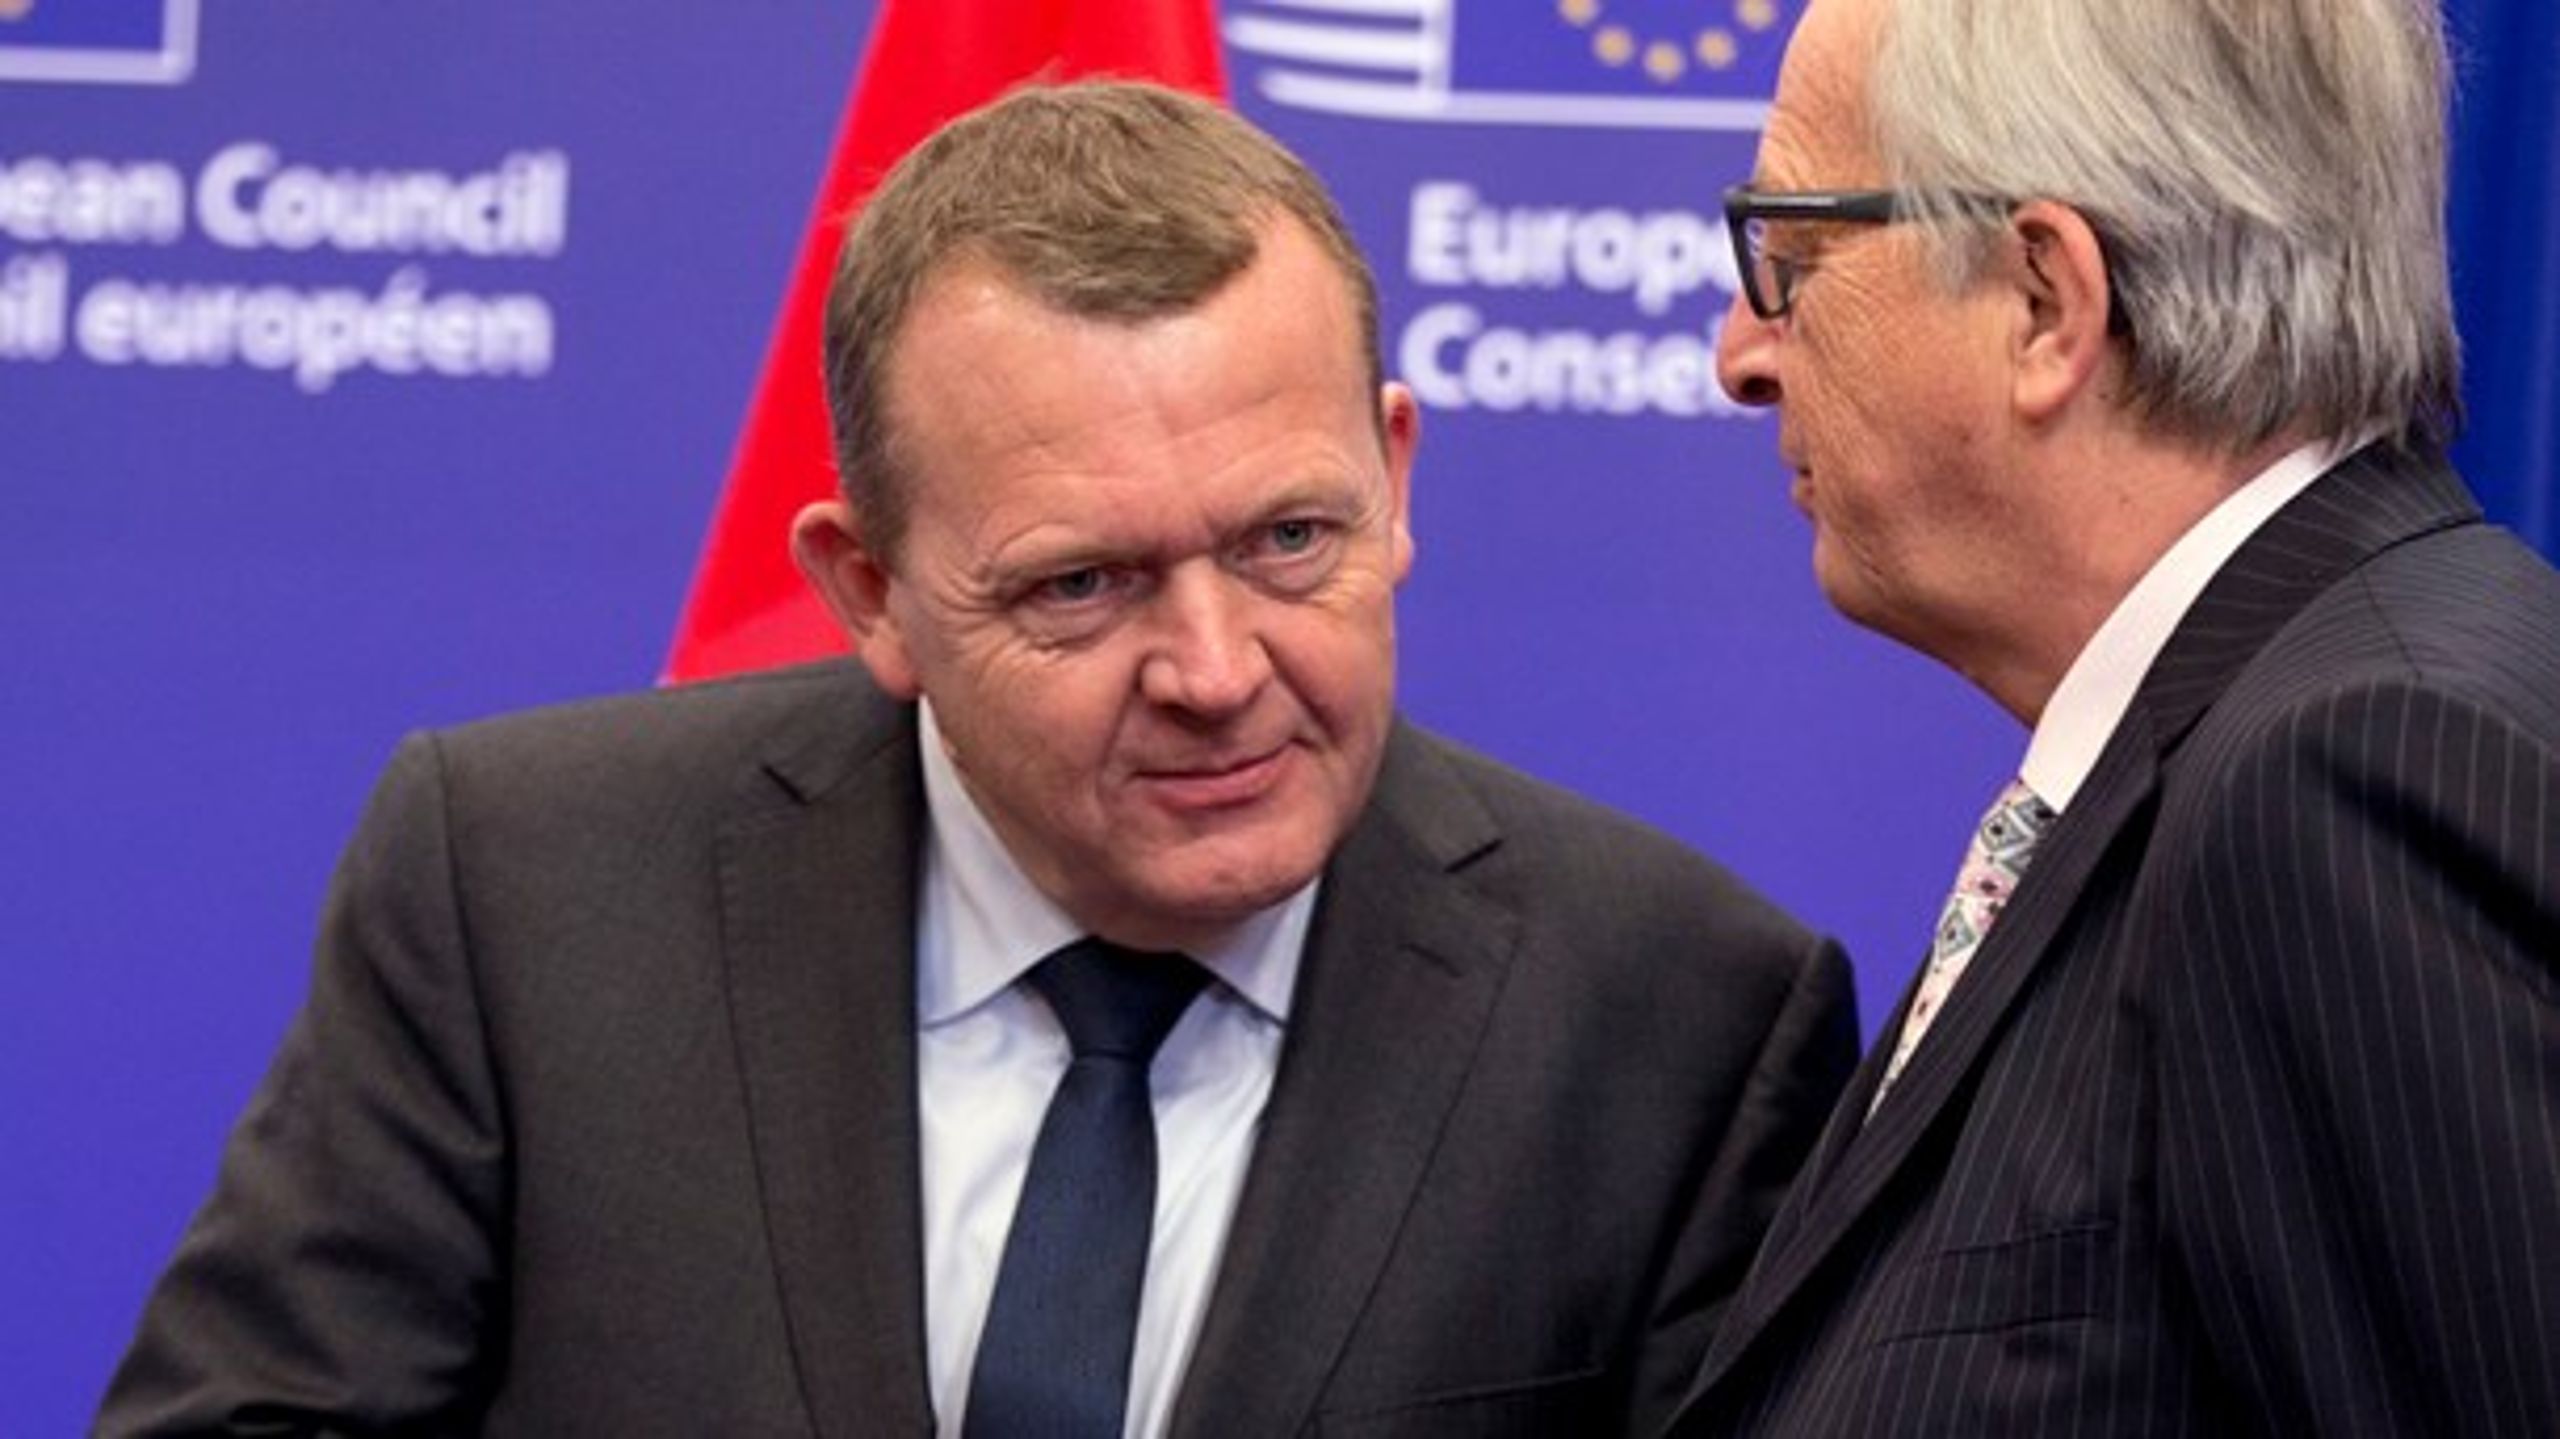 Danmark bliver sat på sidelinjen med et nyt forslag fra EU-Kommissionen, der vil have tættere økonomisk samarbejde i unionen.